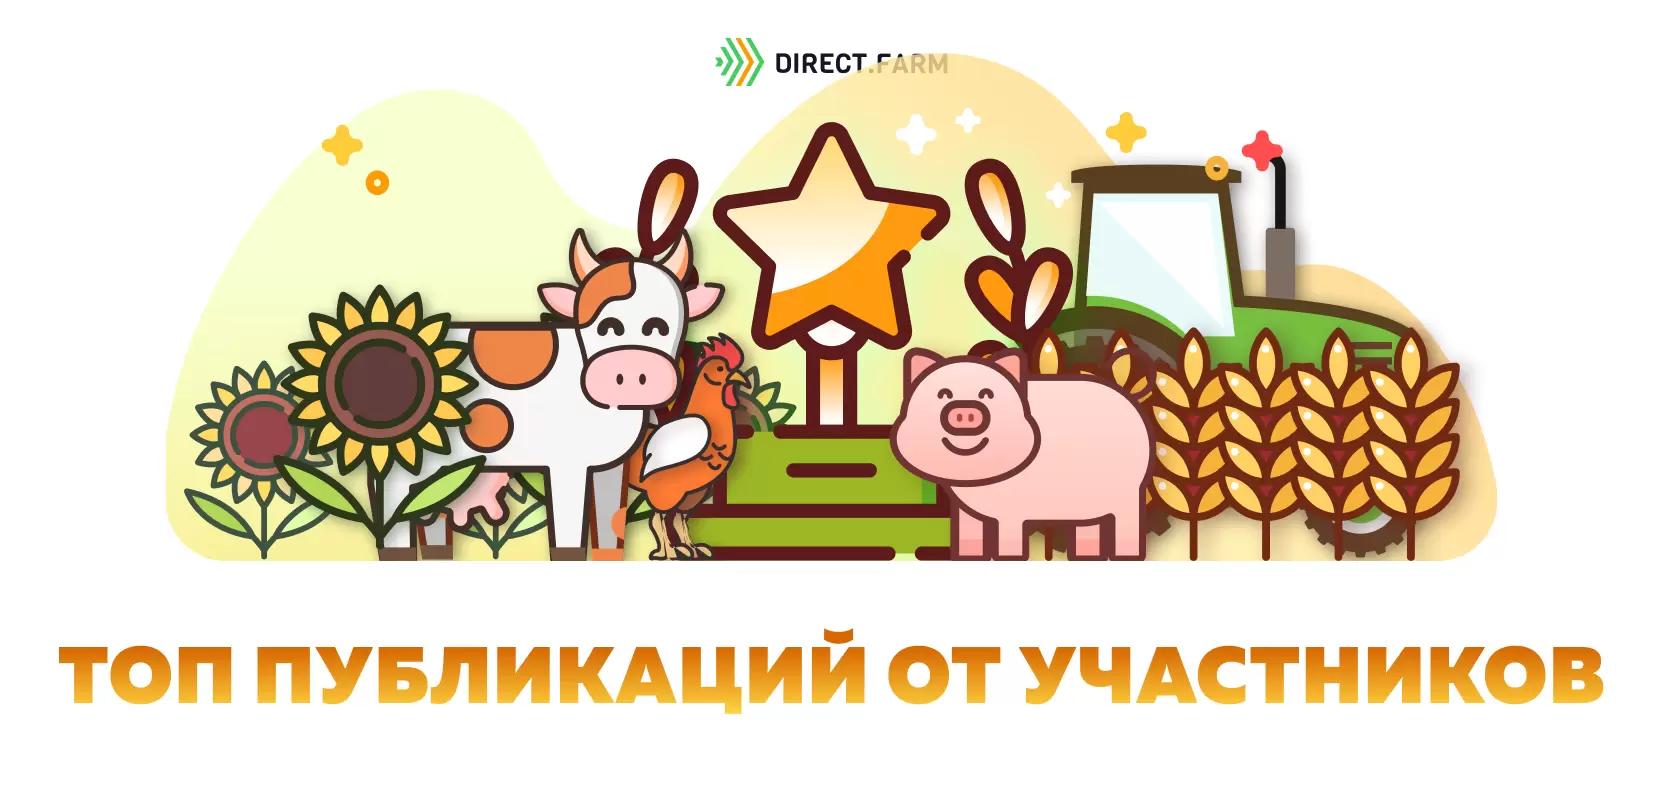 ТОП статей от участников Direct.Farm за июль